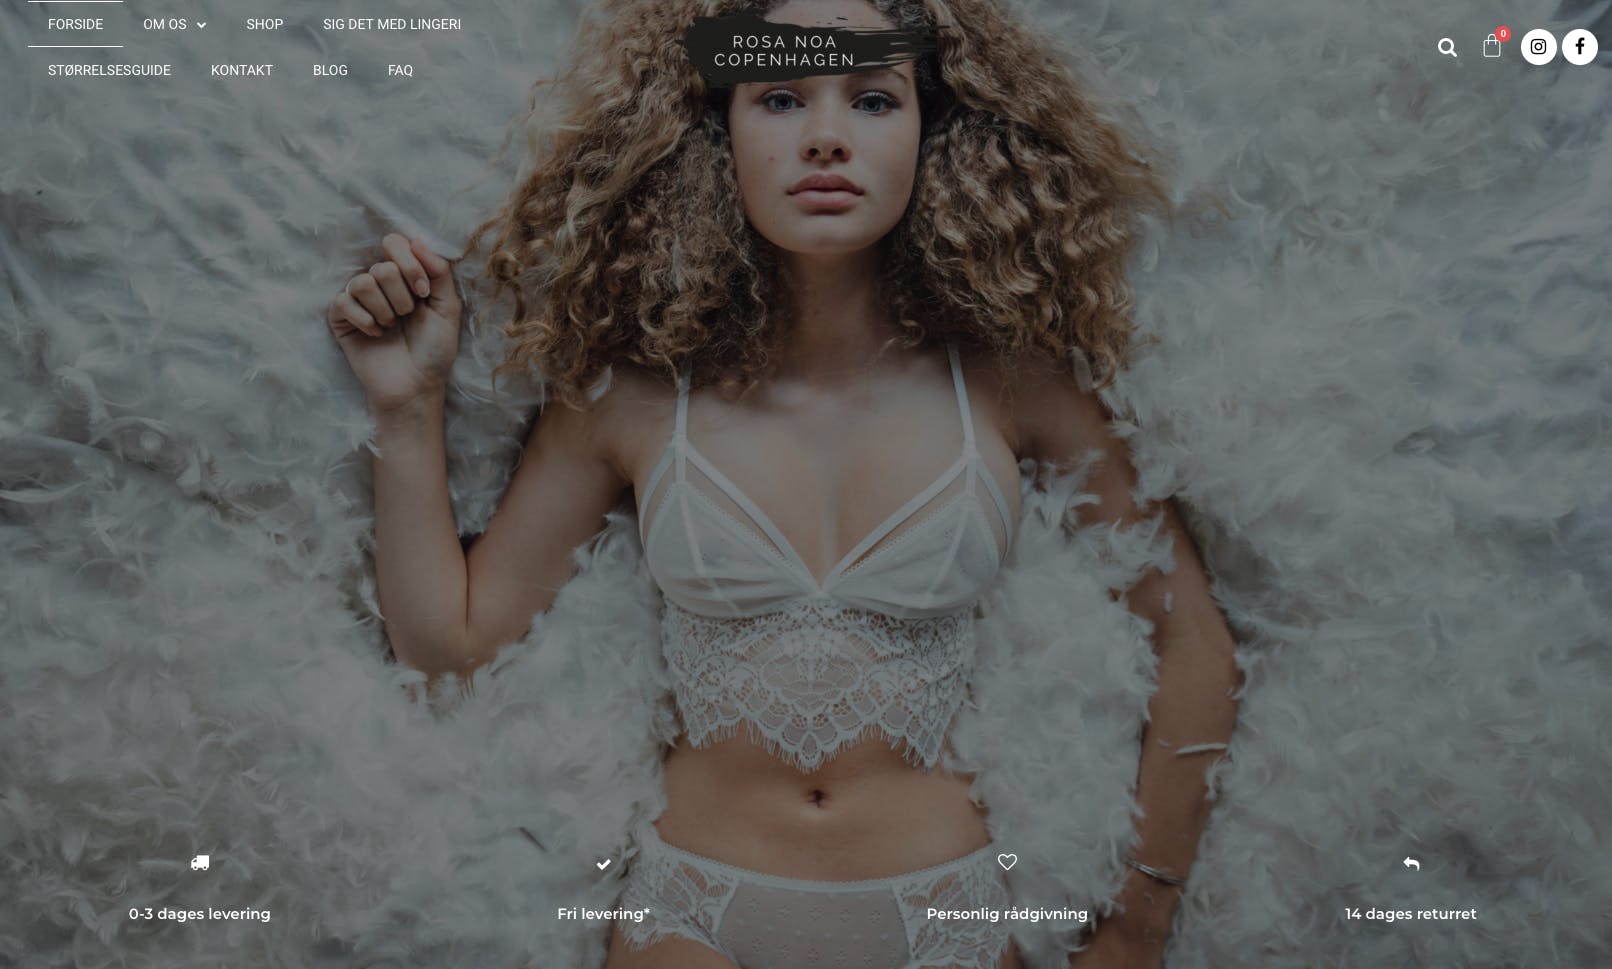 B2C webshop med salg af sexet og behageligt kvalitetssikret lingeri